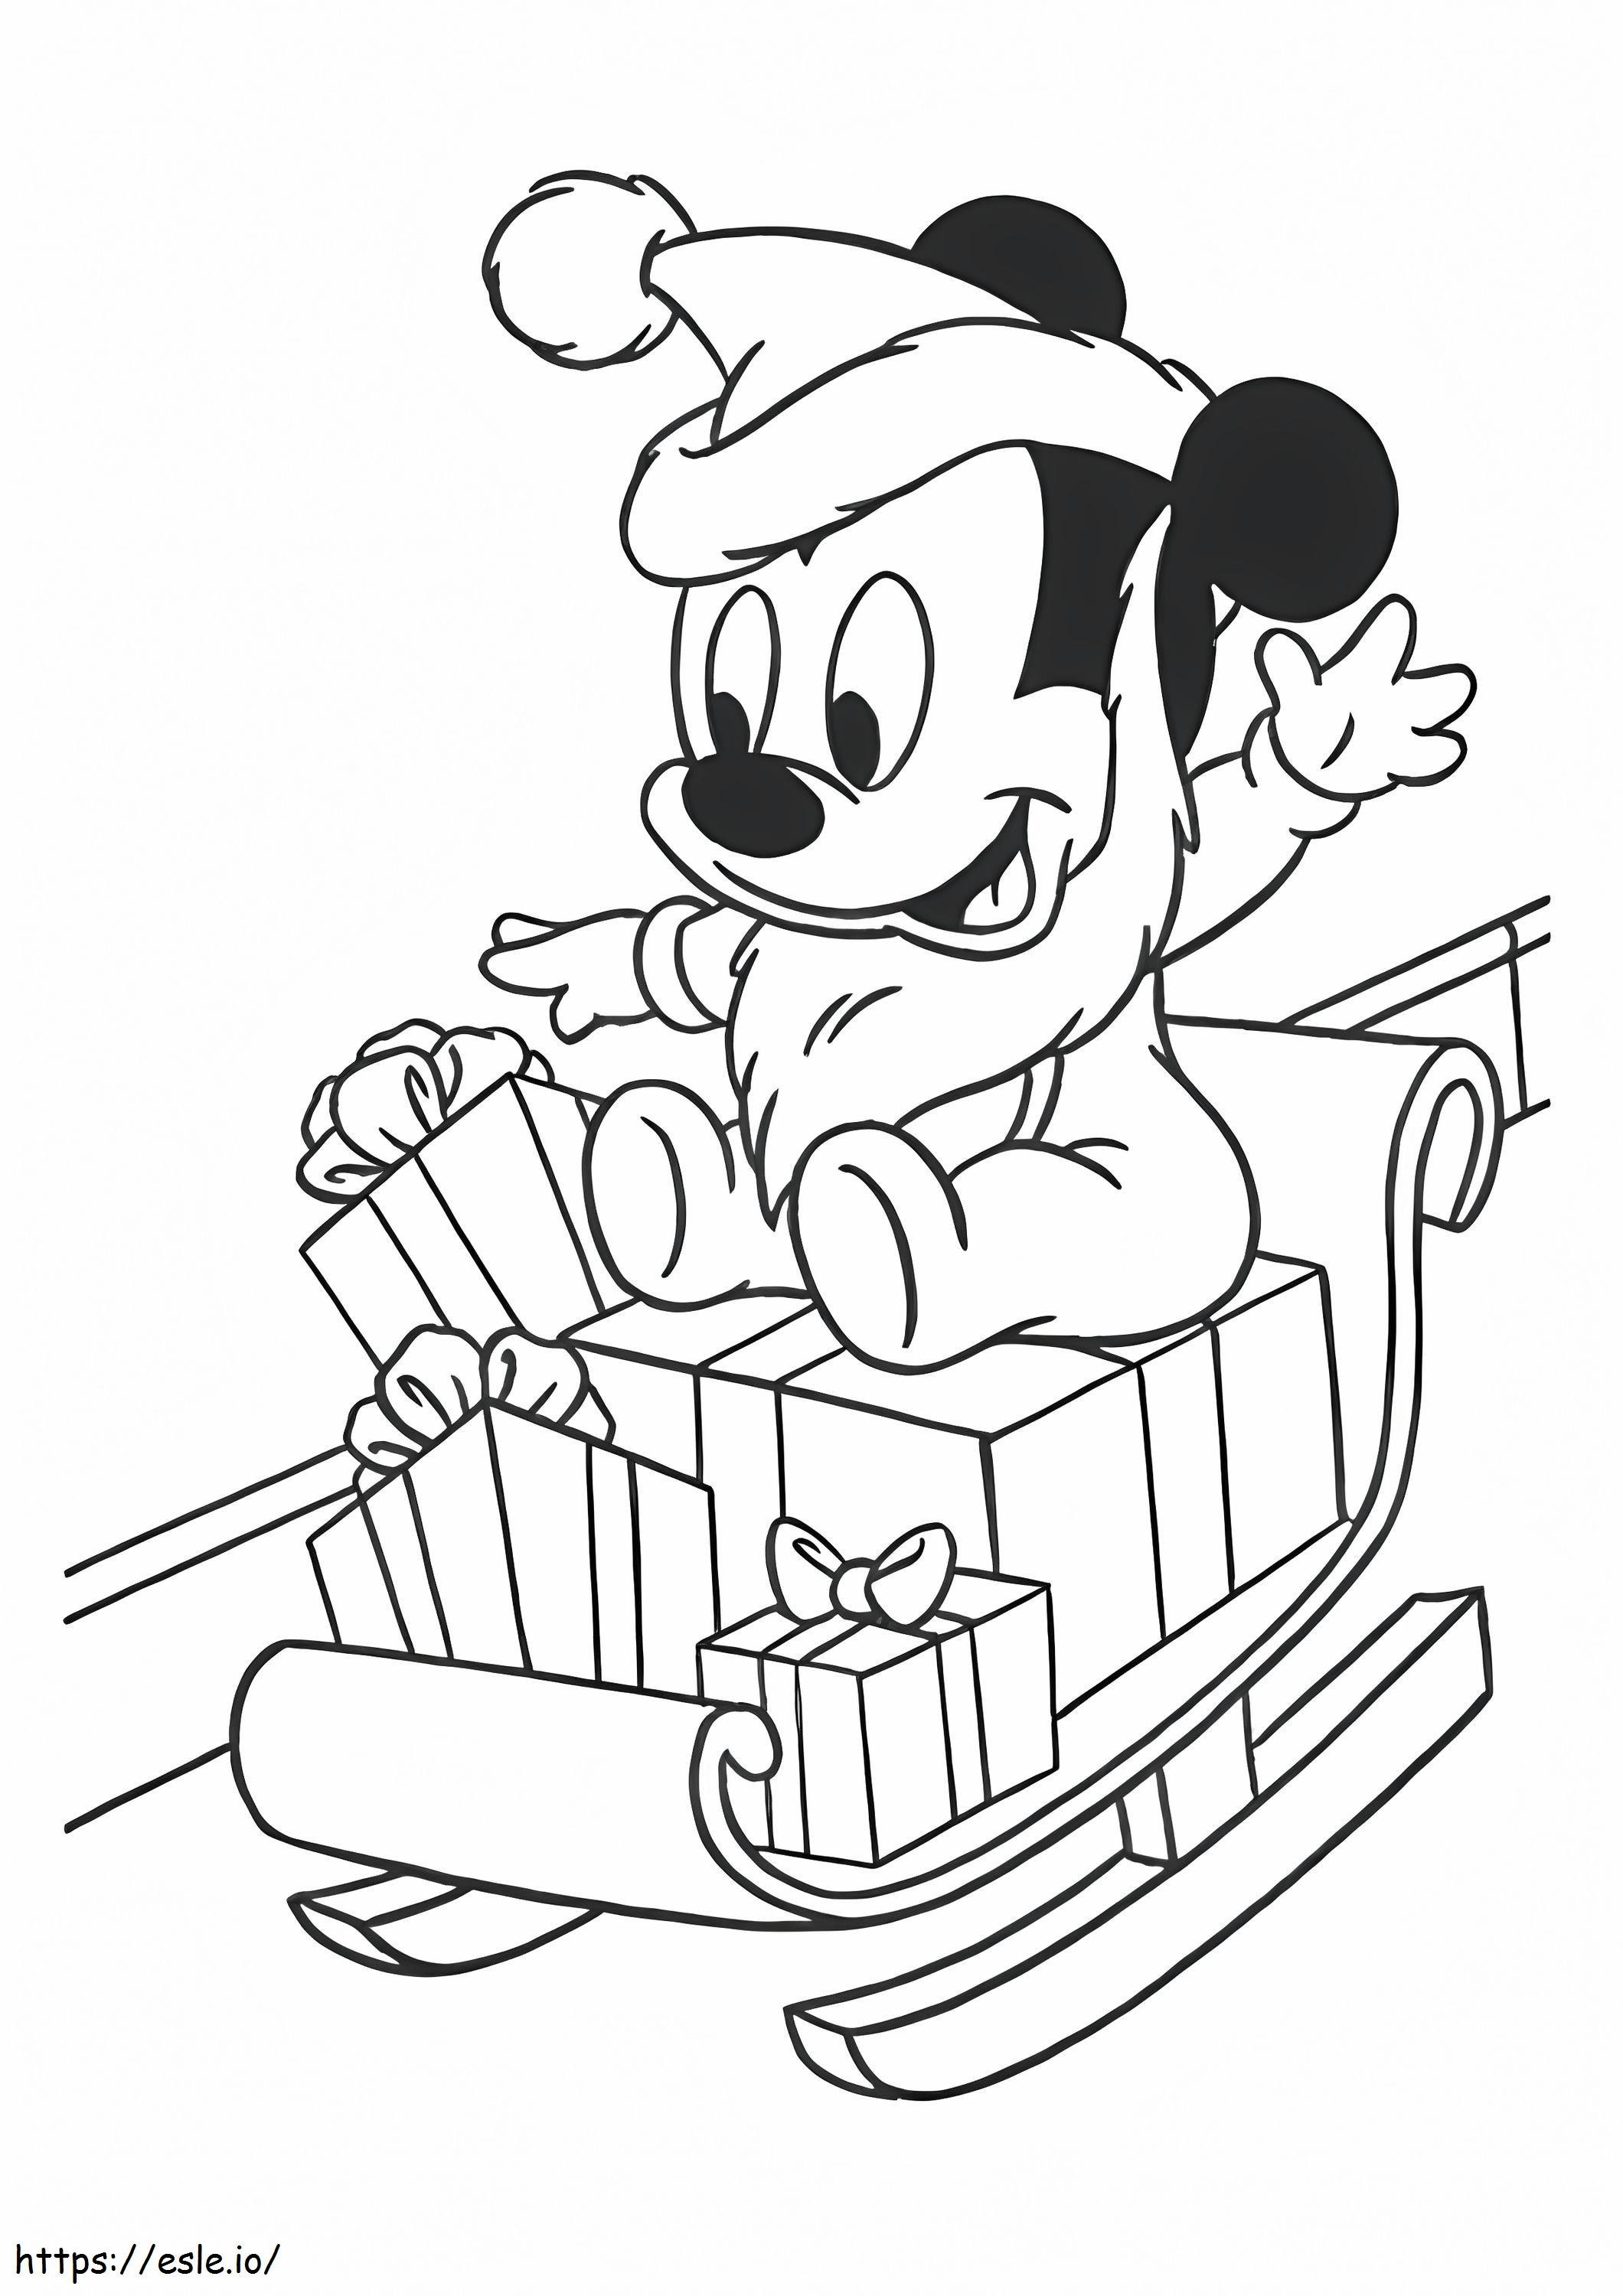 1528099015 Das Baby Mickey Mouse auf Schlitten A4 ausmalbilder